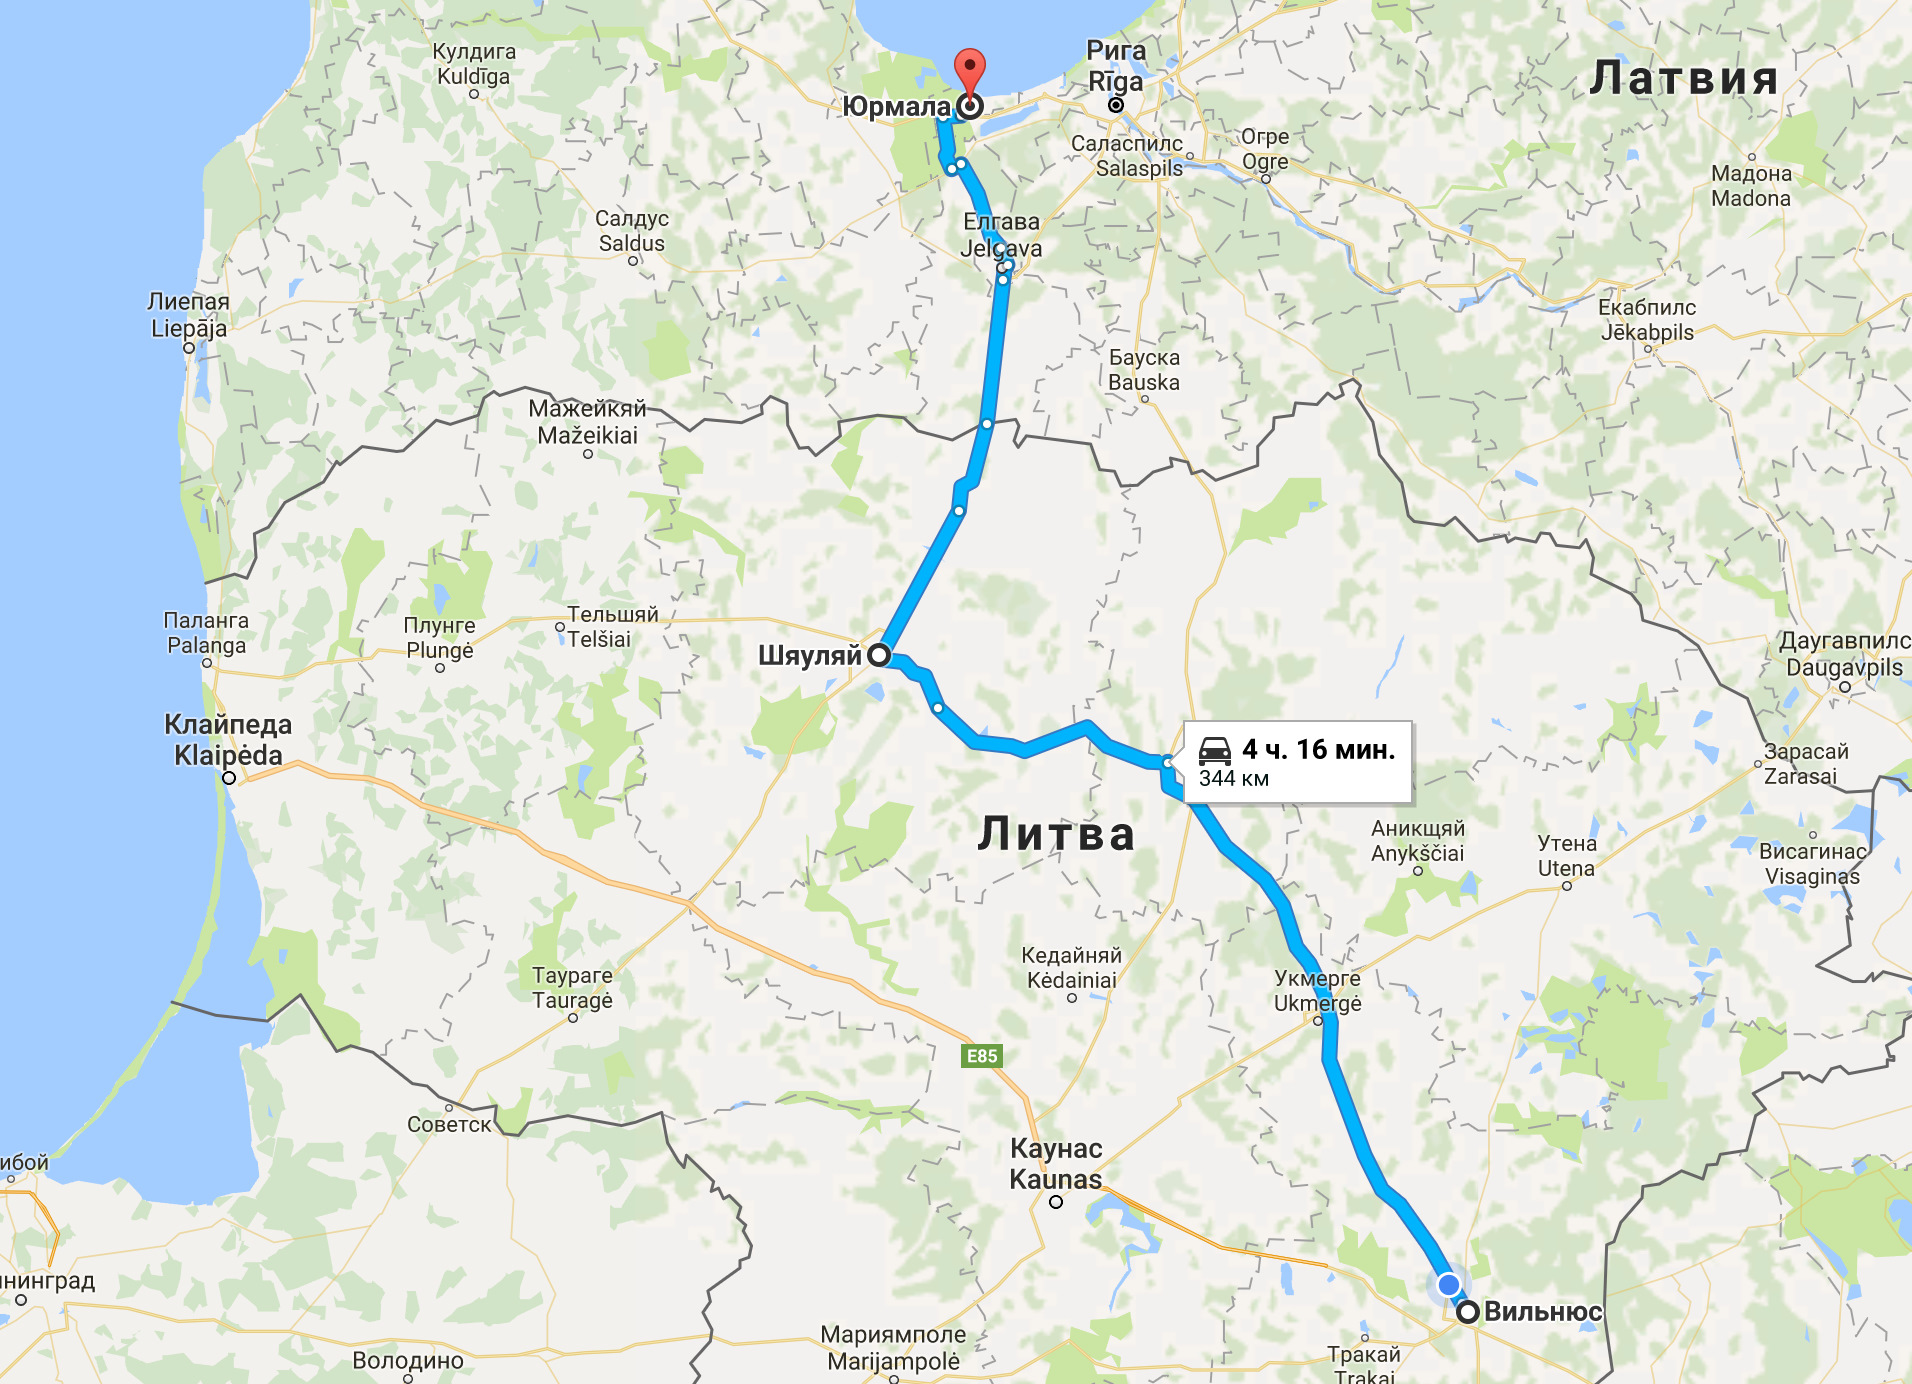 Как быстро добраться на разных видах транспорта из Риги в Юрмалу